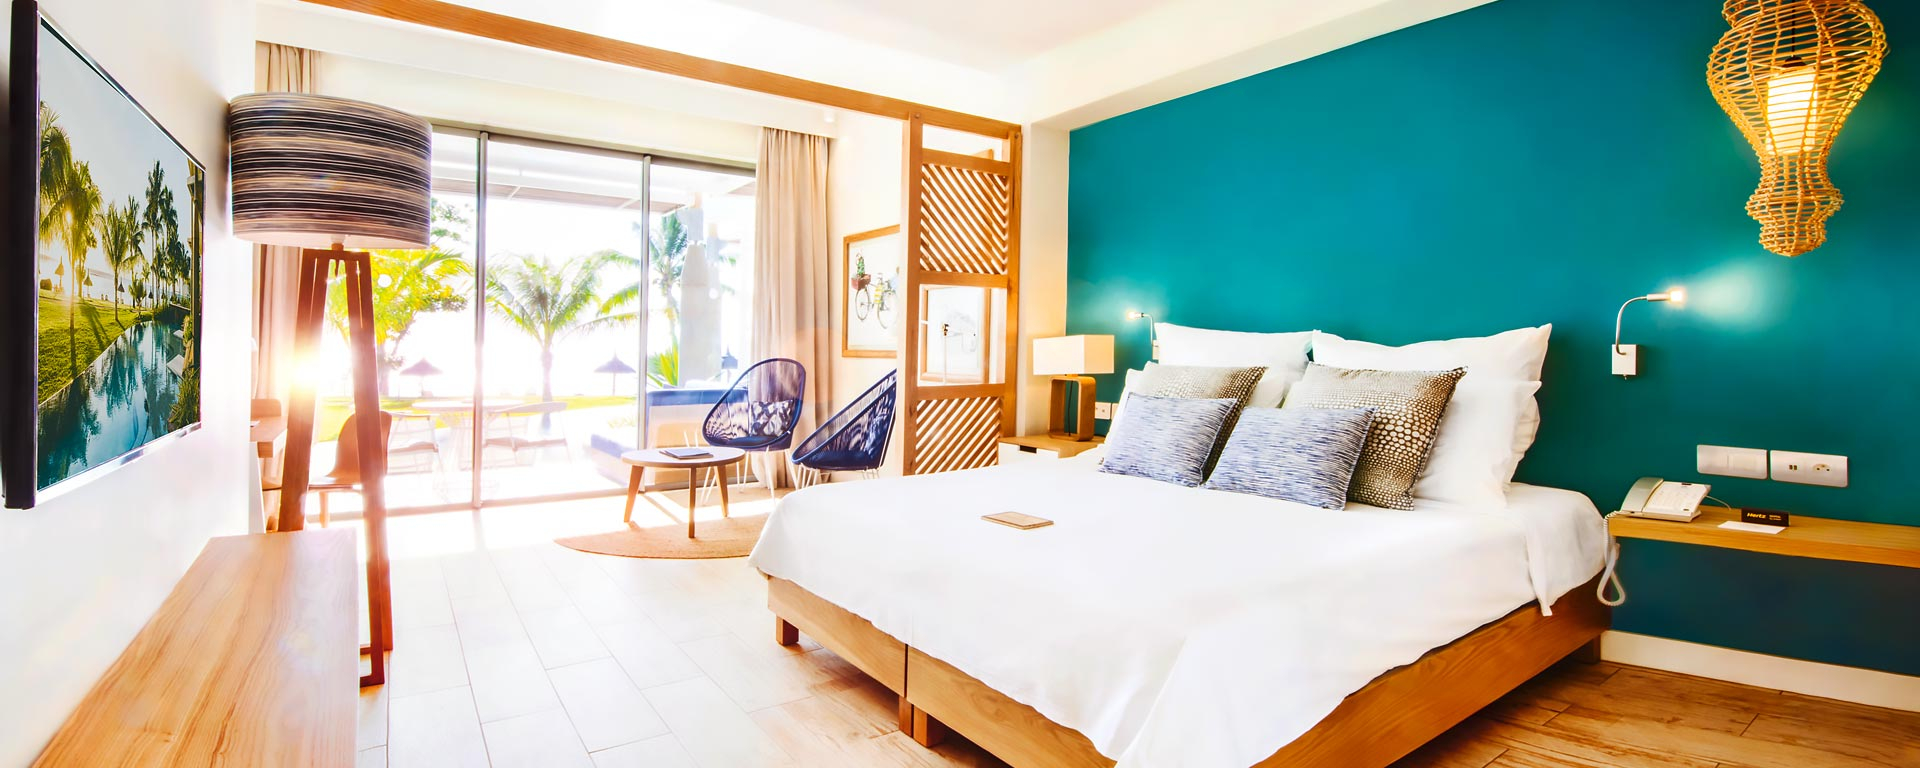 Ocean View Room  - Rooms - Victoria Beachcomber Resort & Spa